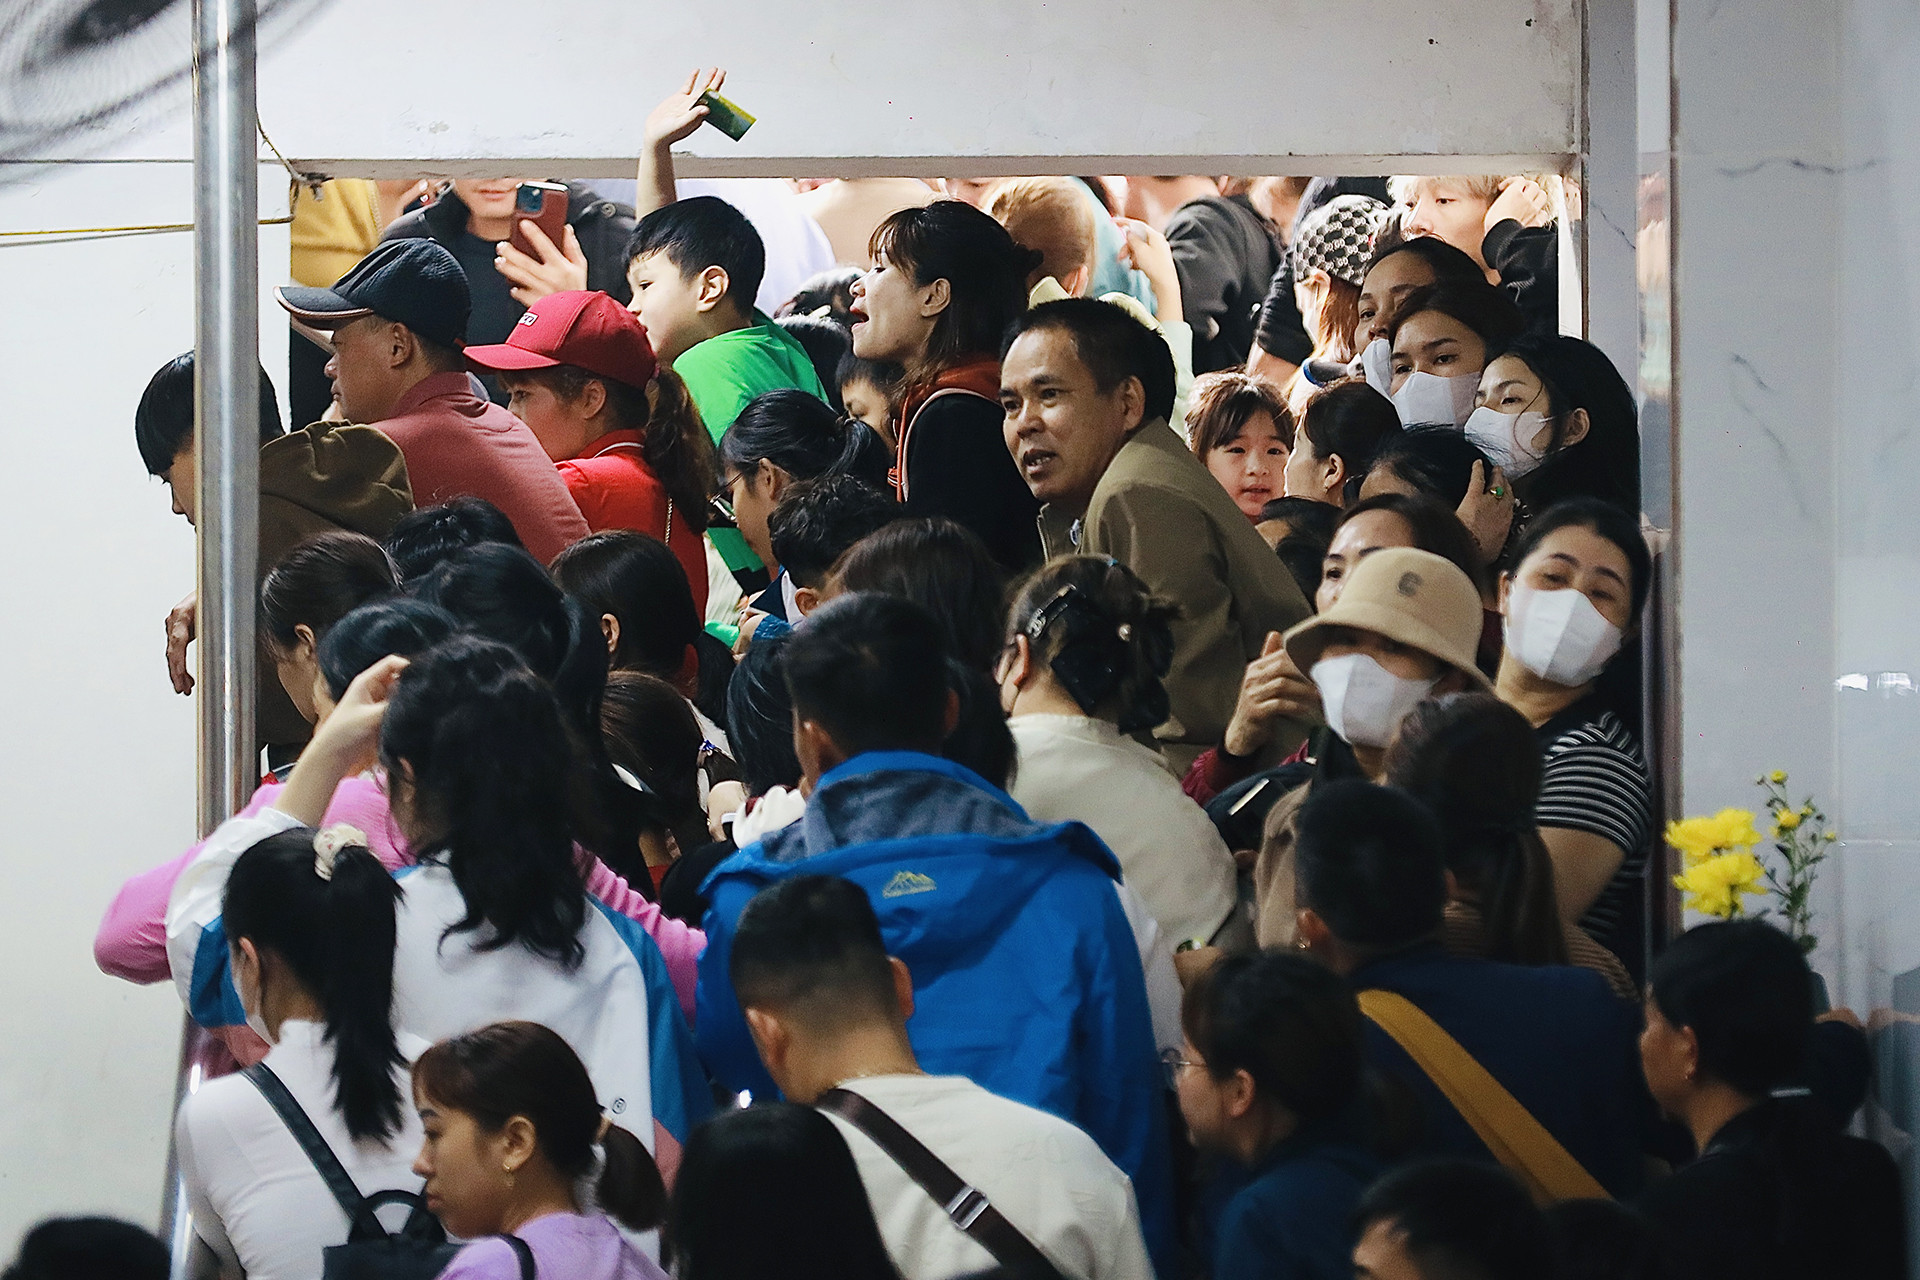 Hàng chục nghìn người cực nhọc chen lấn lên cáp treo chùa Hương-8